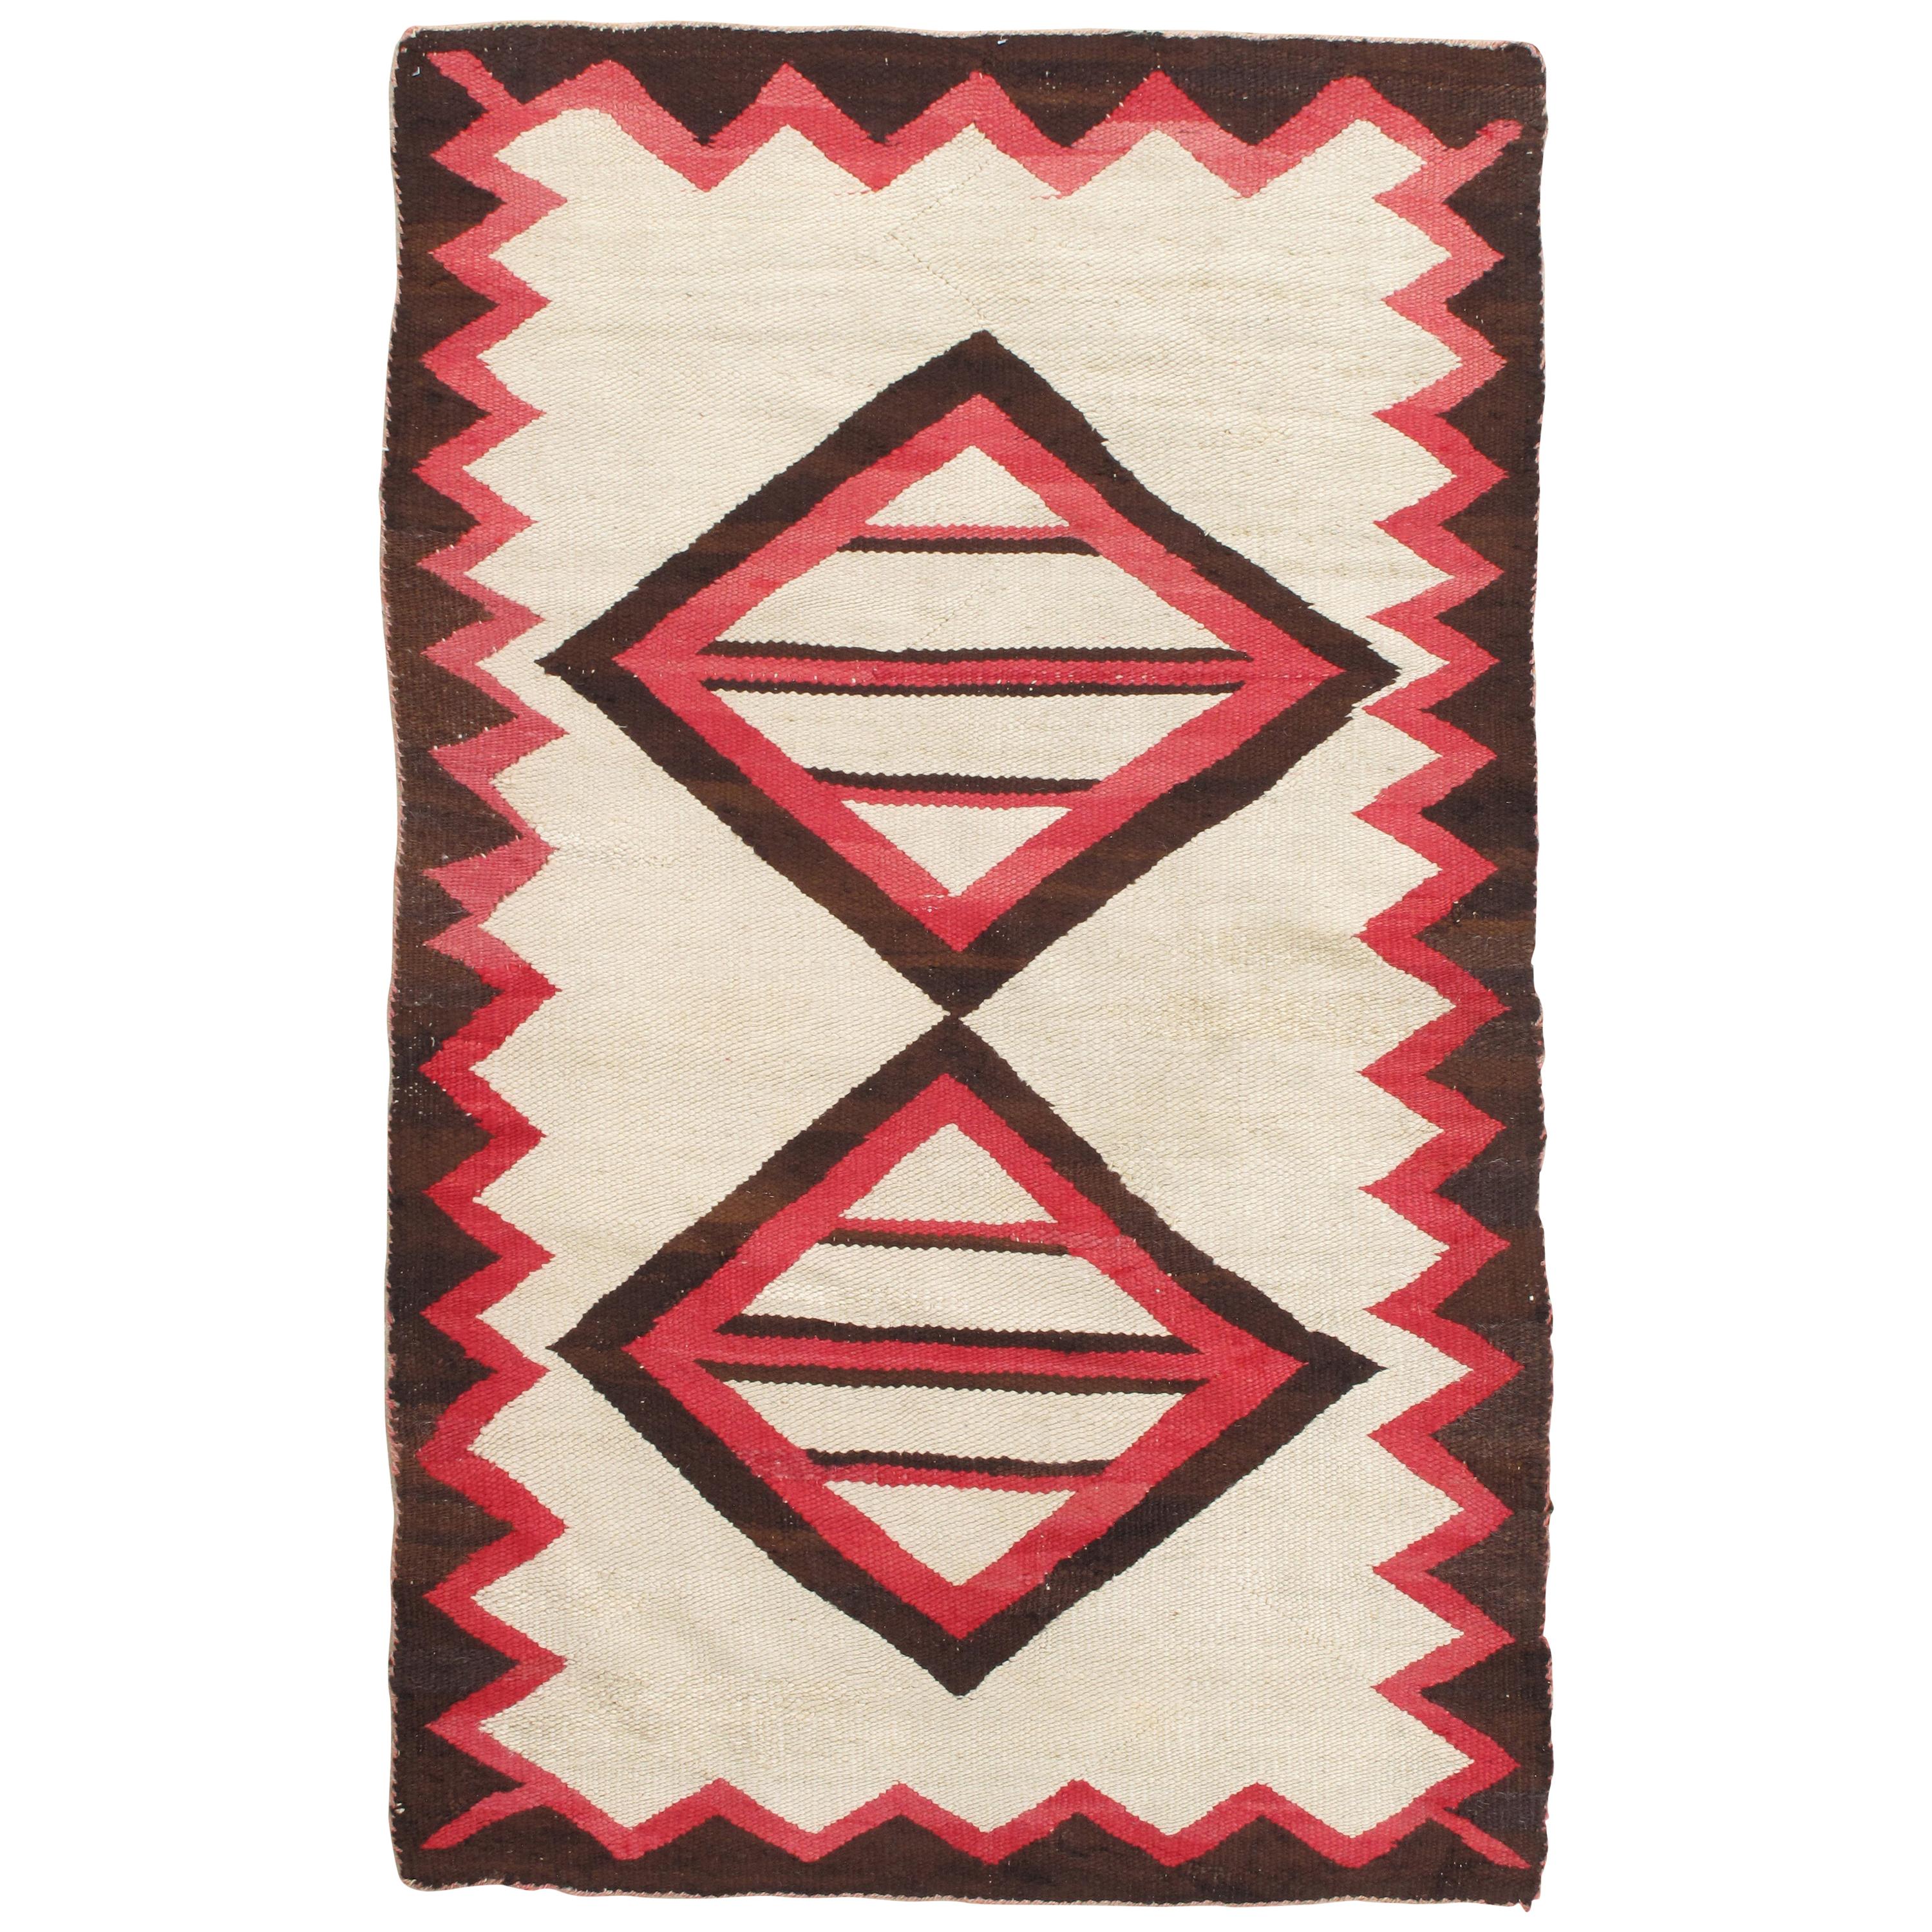 Vintage Navajo Rug, Folk Rug, Handmade Wool, Beige, Coral, Brown, Neutral